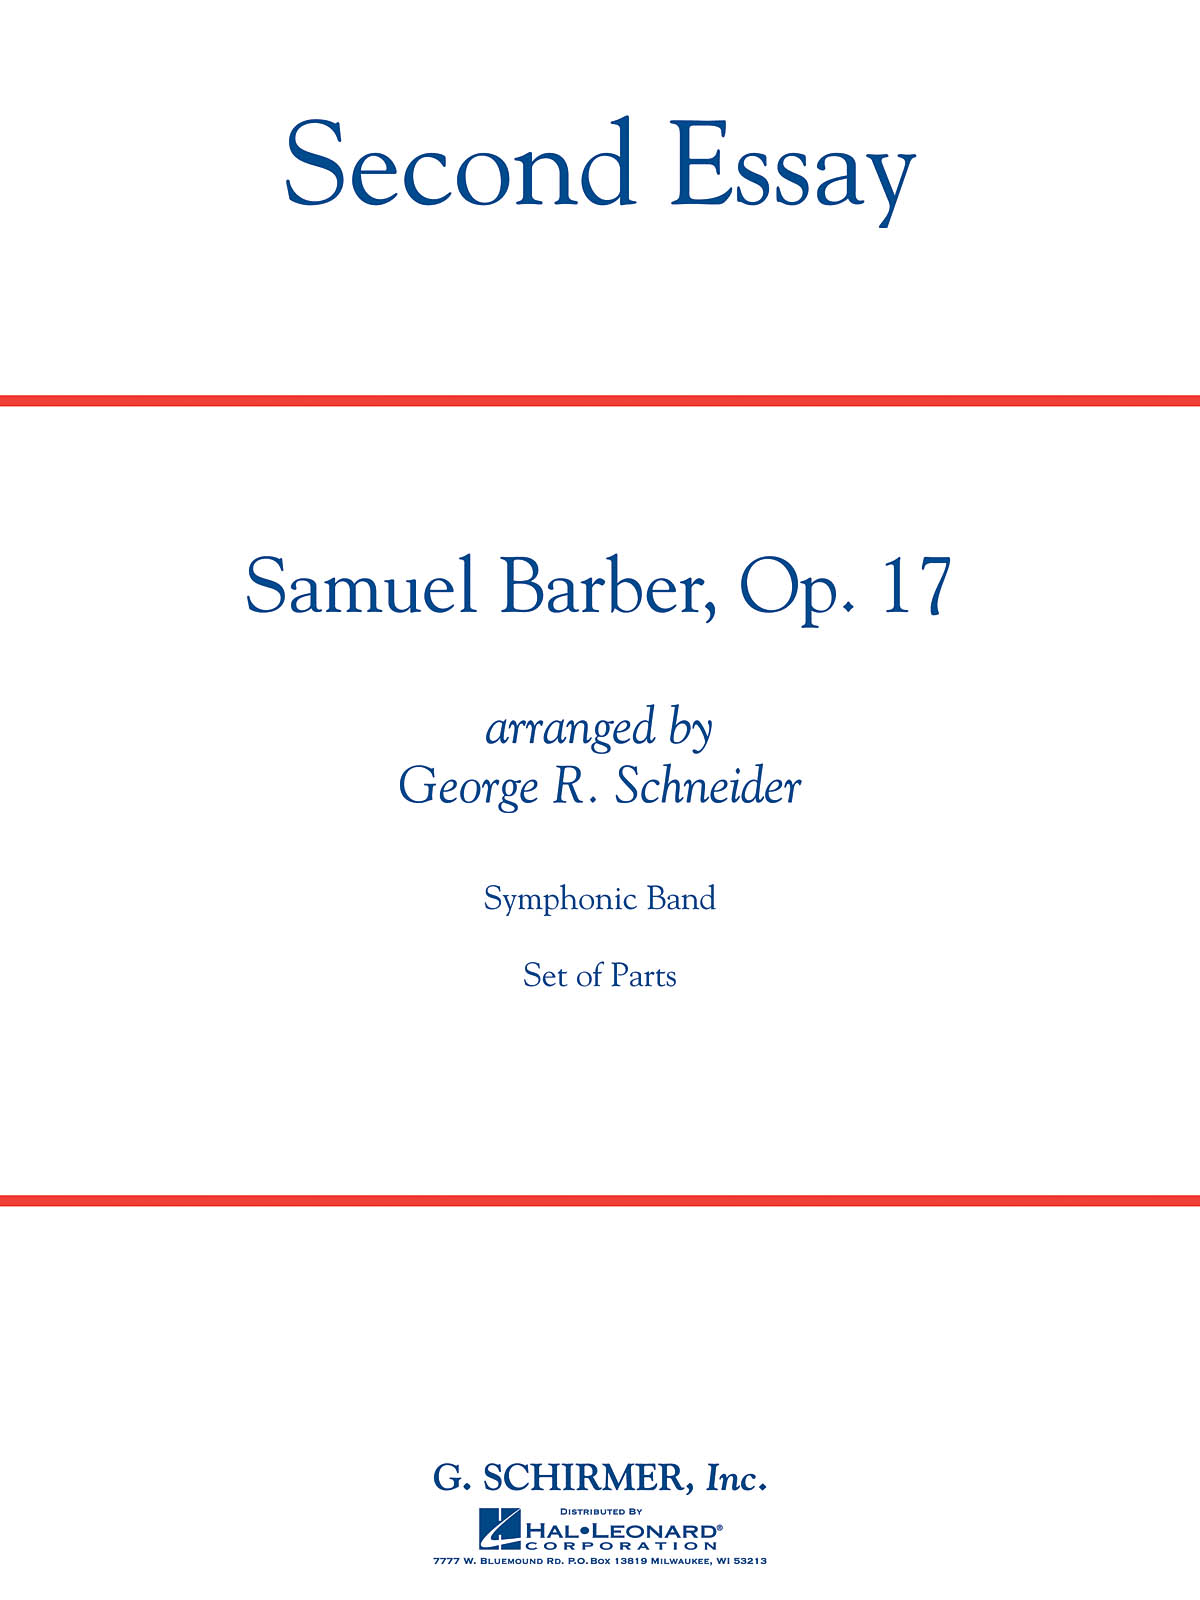 Samuel Barber: Second Essay Cb Full Score (Arranged For Concert Band)